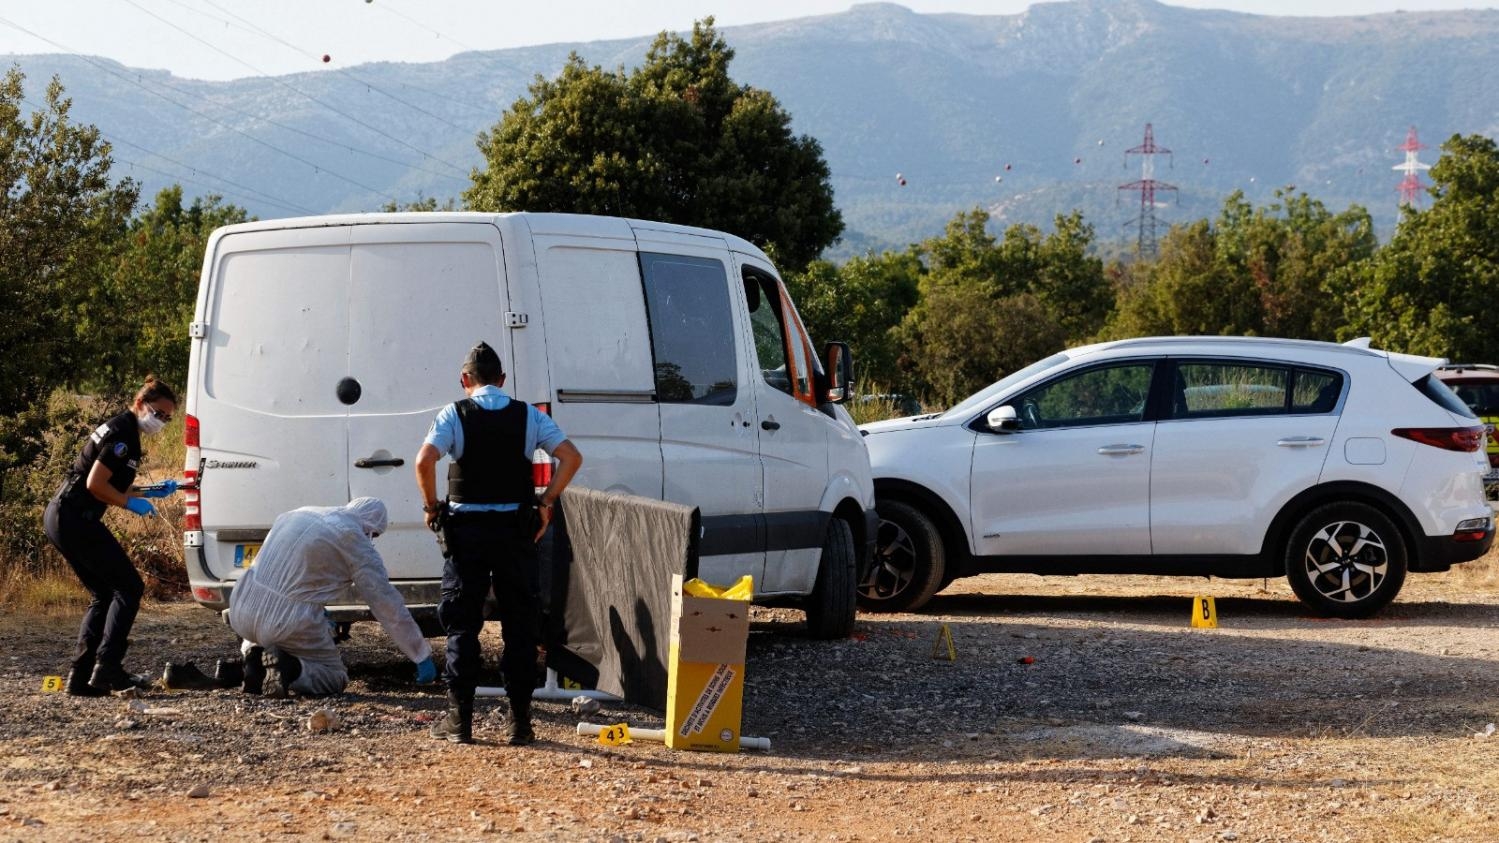 Во Франции рабочие на фургоне сбили мэра после ссоры из-за мусора